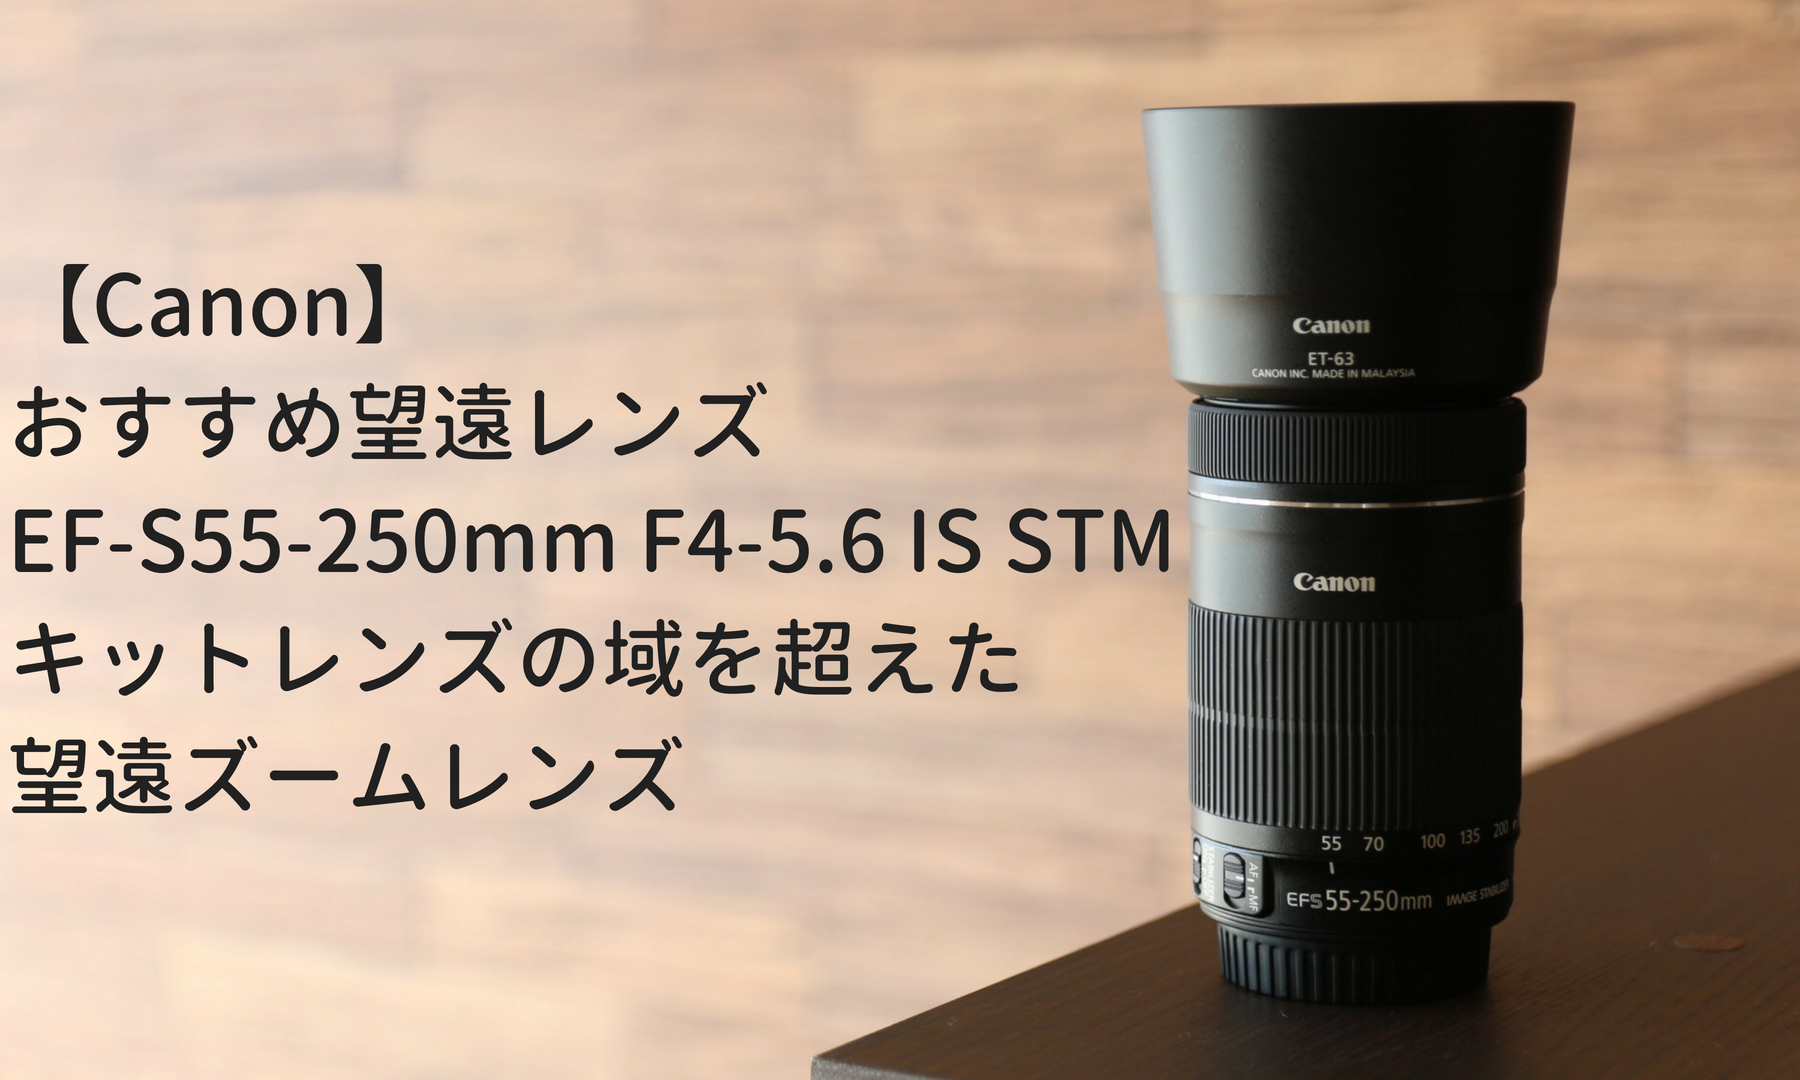 の公式オンラインストア Canon キャノン EF-S55-250mm F4-5.6 IS 望遠